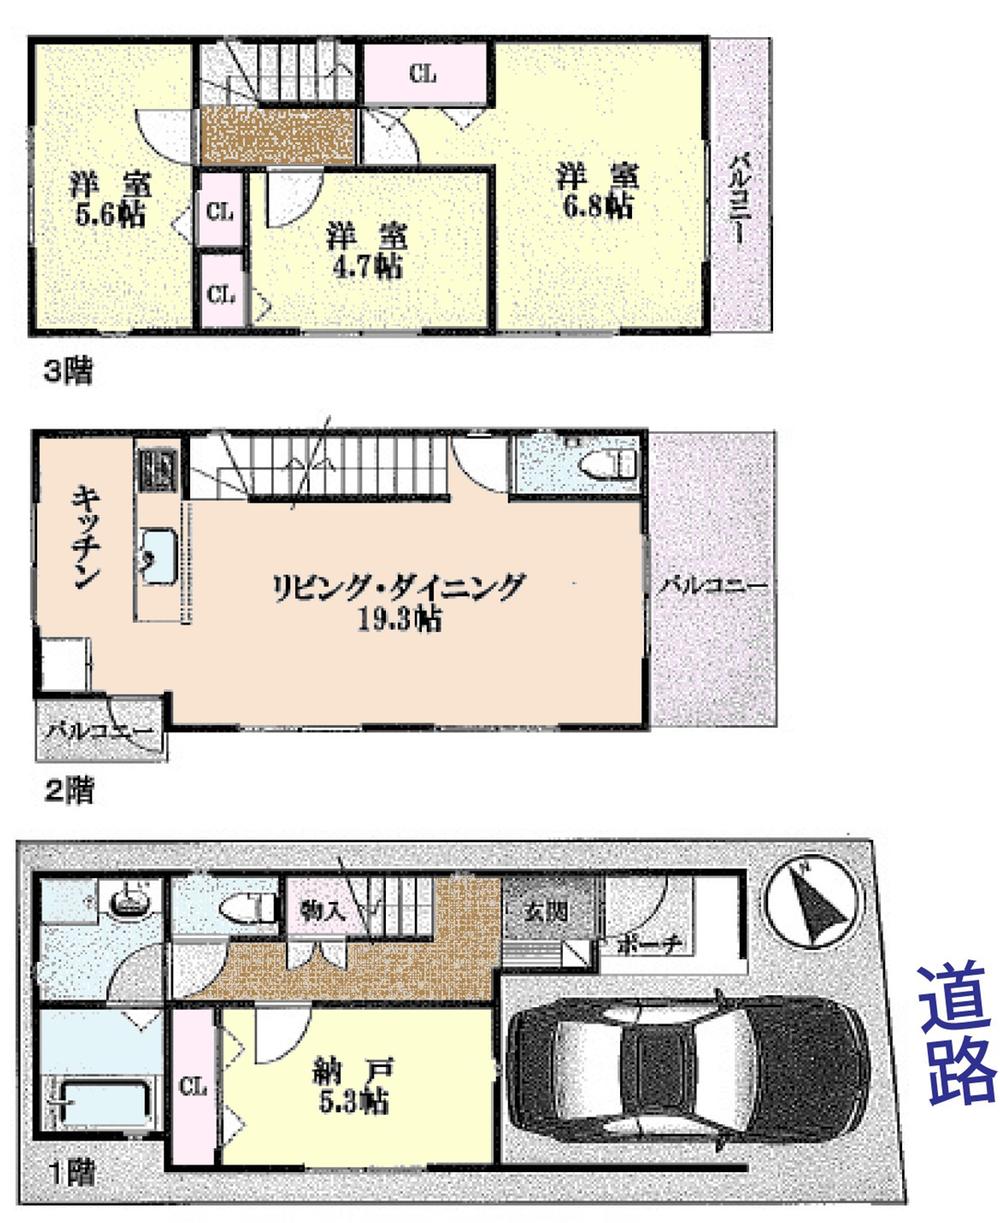 Floor plan. 37,800,000 yen, 3LDK + S (storeroom), Land area 65.44 sq m , Building area 108.27 sq m